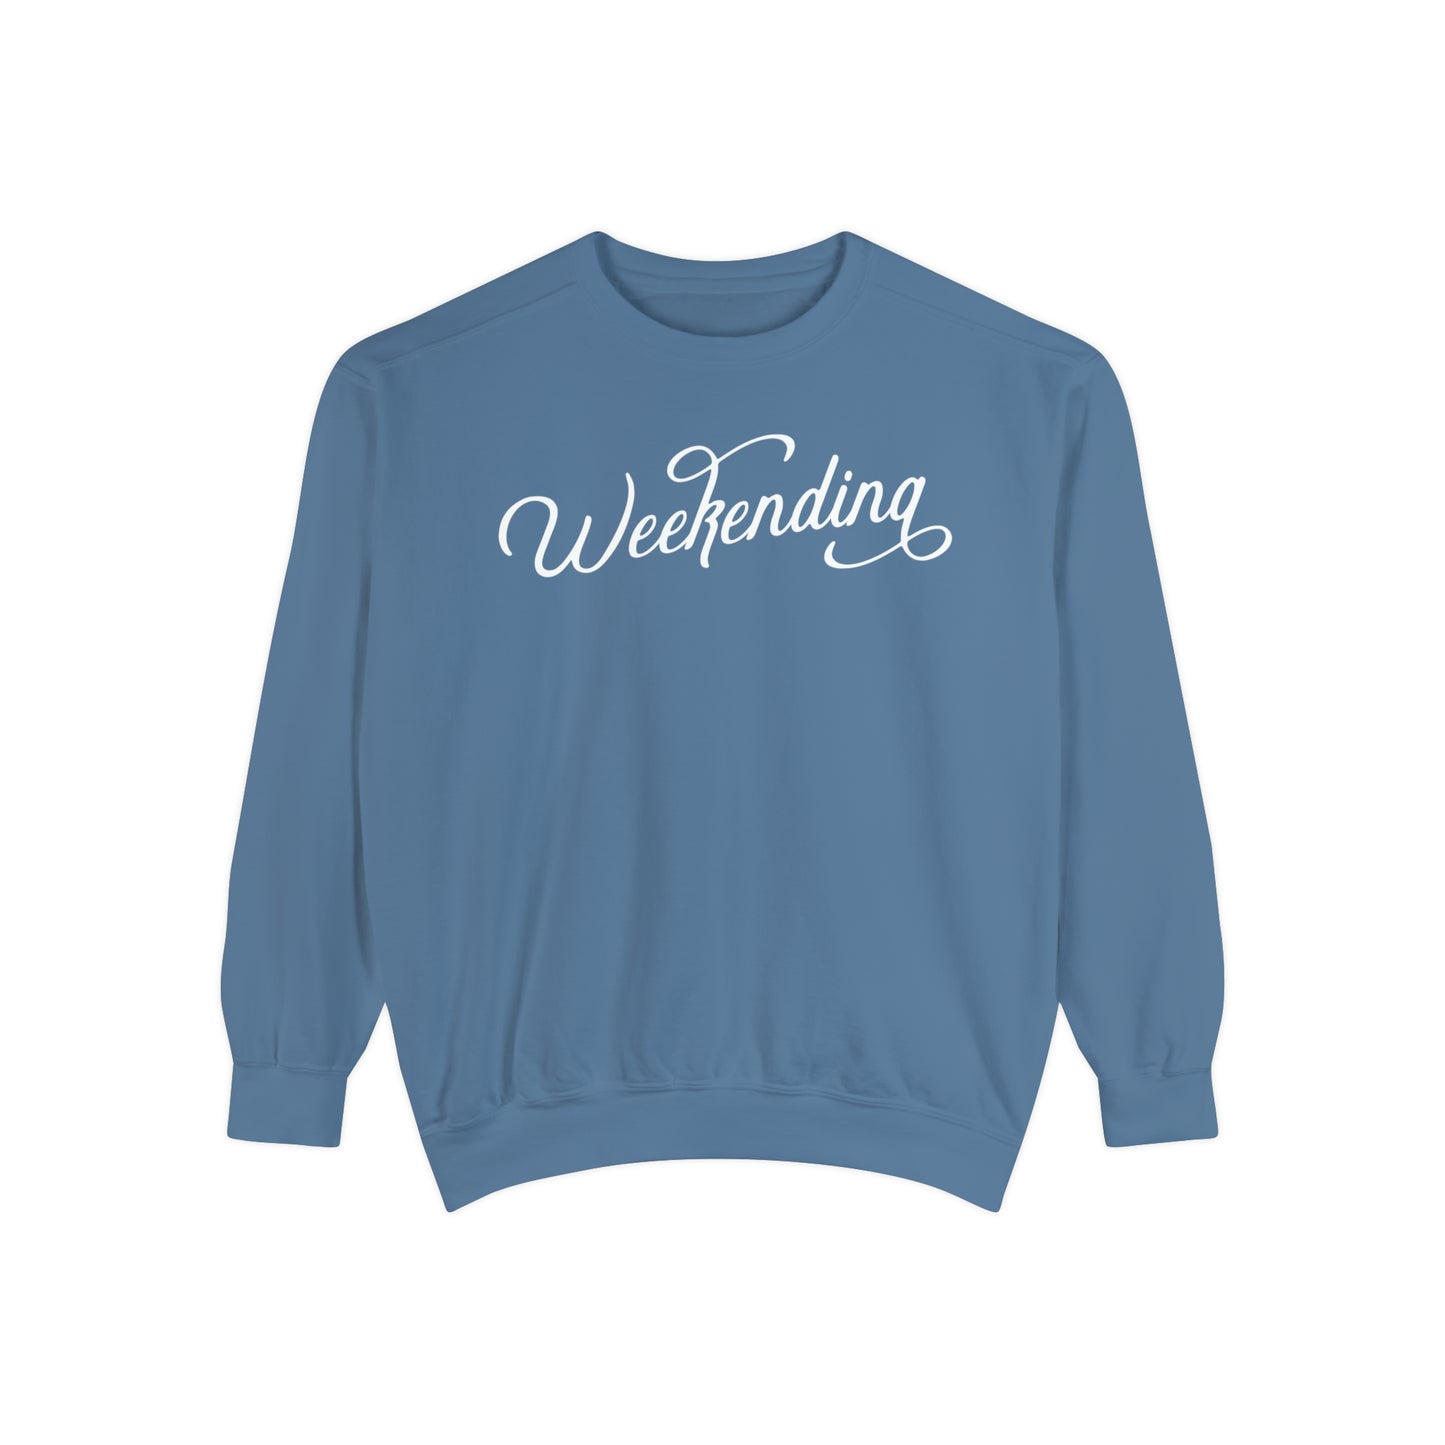 Weekending Sweatshirt